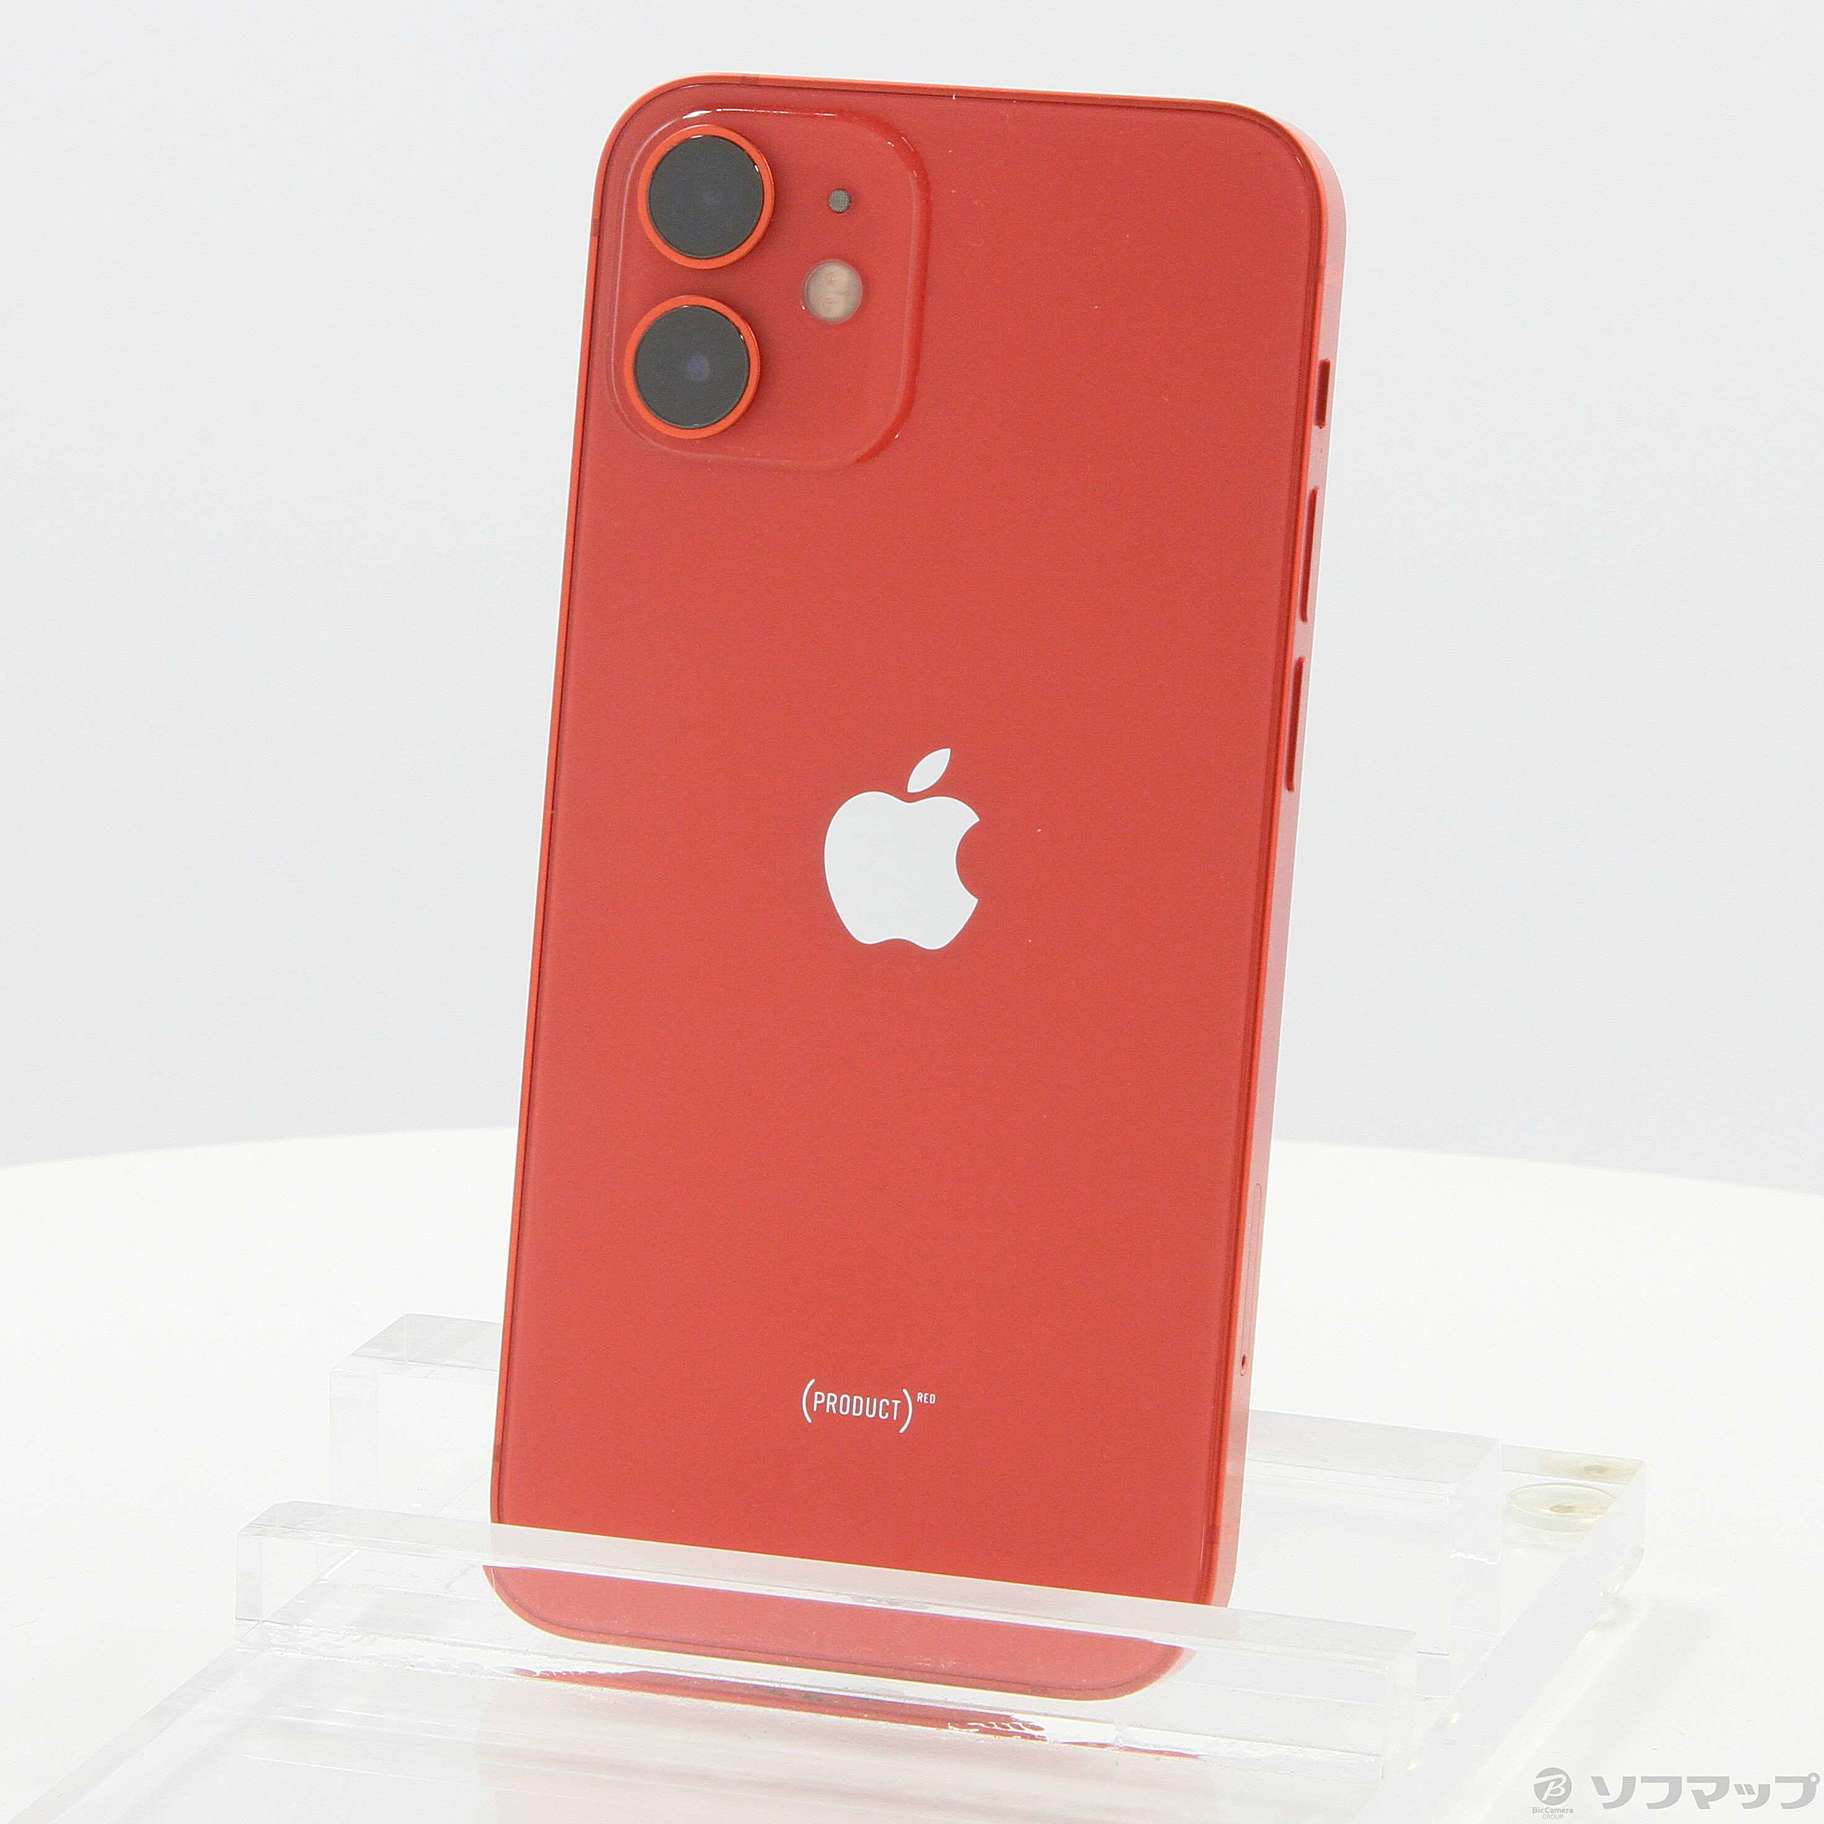 iPhone 12 mini Product(RED) レッド SIMフリー容量128GB